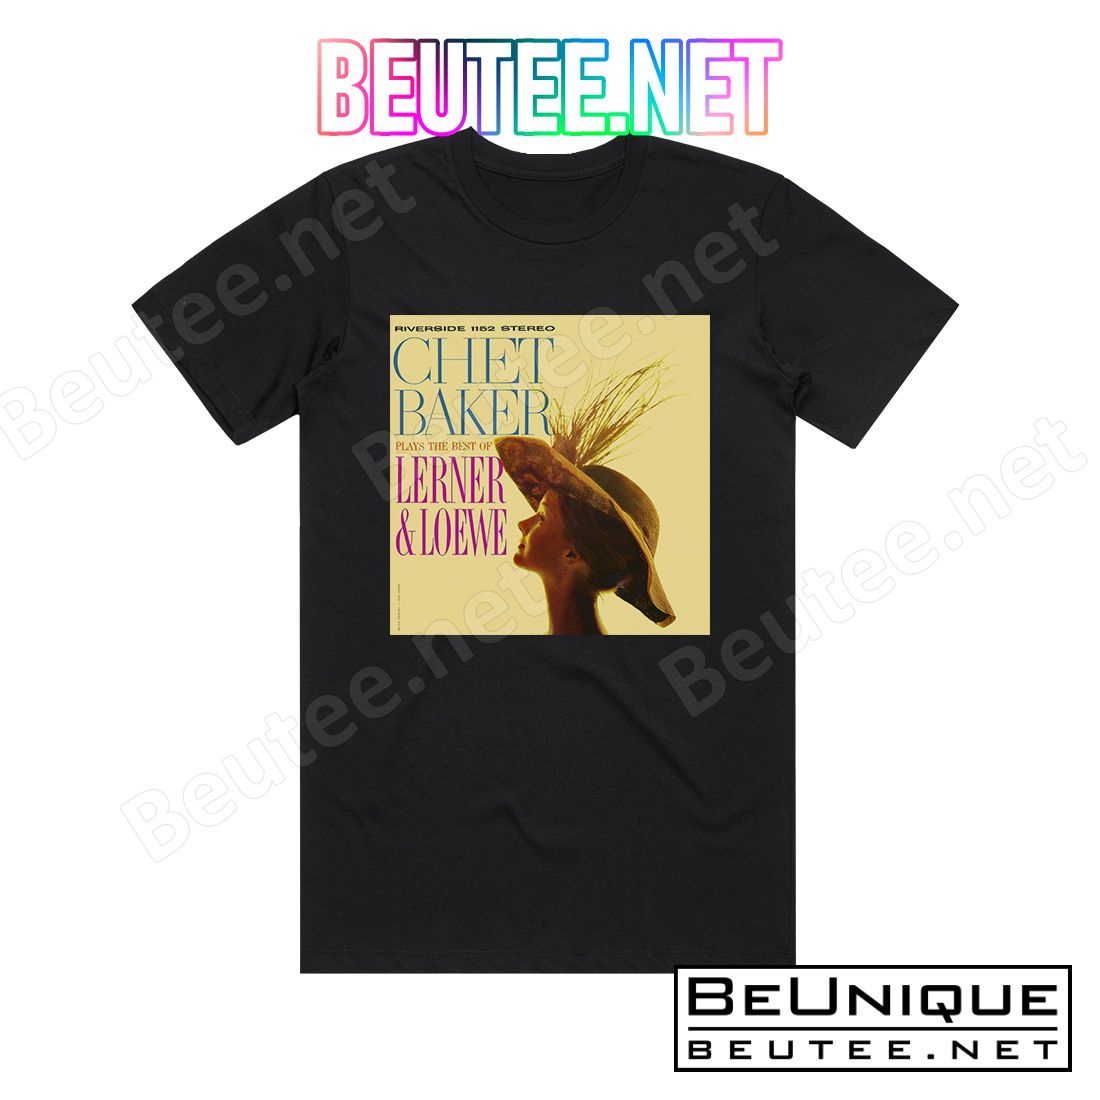 Chet Baker Chet Baker Plays The Best Of Lerner Loewe 2 Album Cover T-Shirt